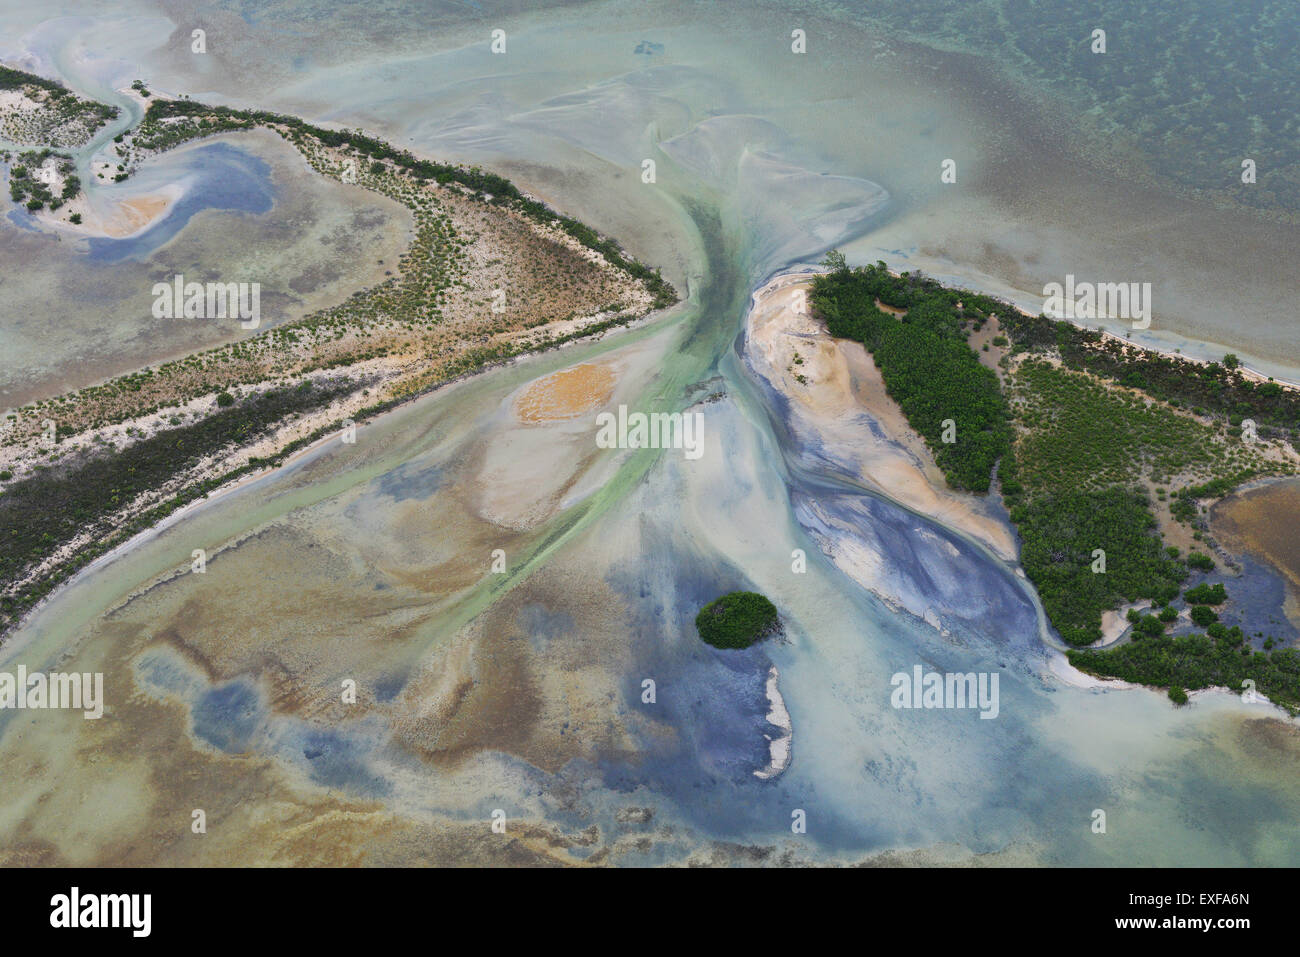 Aerial view of coast and sea at Sian Ka'an natural reserve, Quintana Roo, Mexico Stock Photo